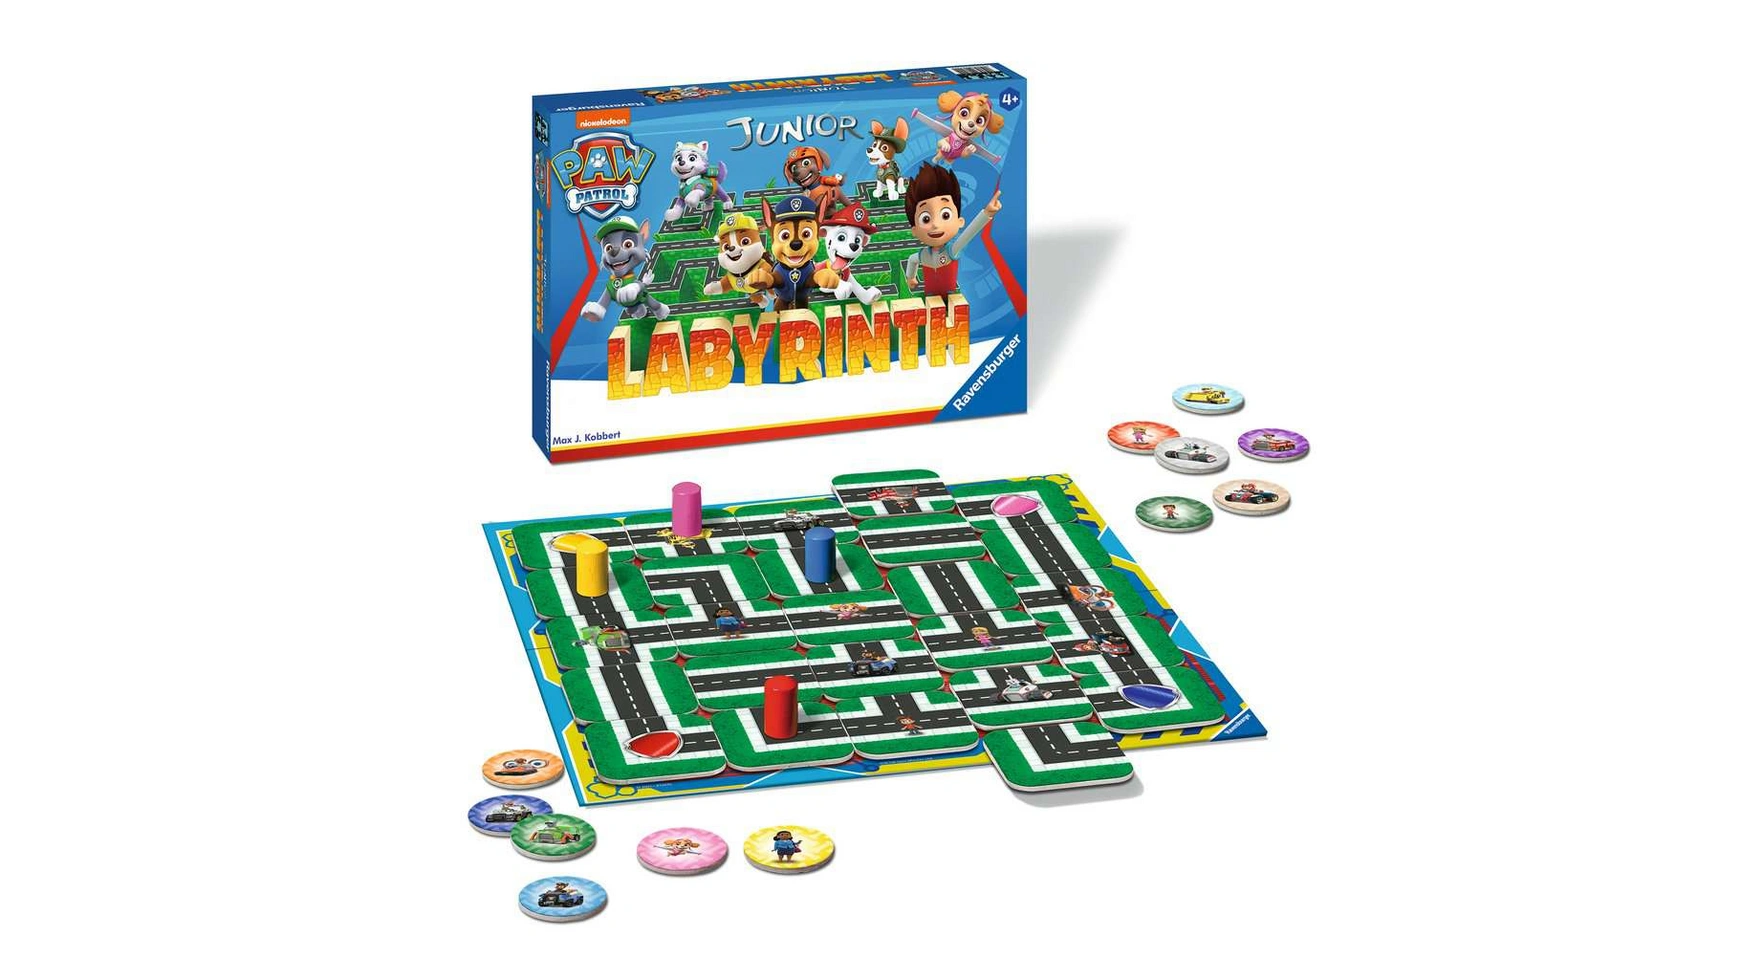 Ravensburger Spiele Paw Patrol Junior Labyrinth, известная настольная игра от Ravensburger в детской версии настольная игра ravensburger лабиринт джуниор щенячий патруль